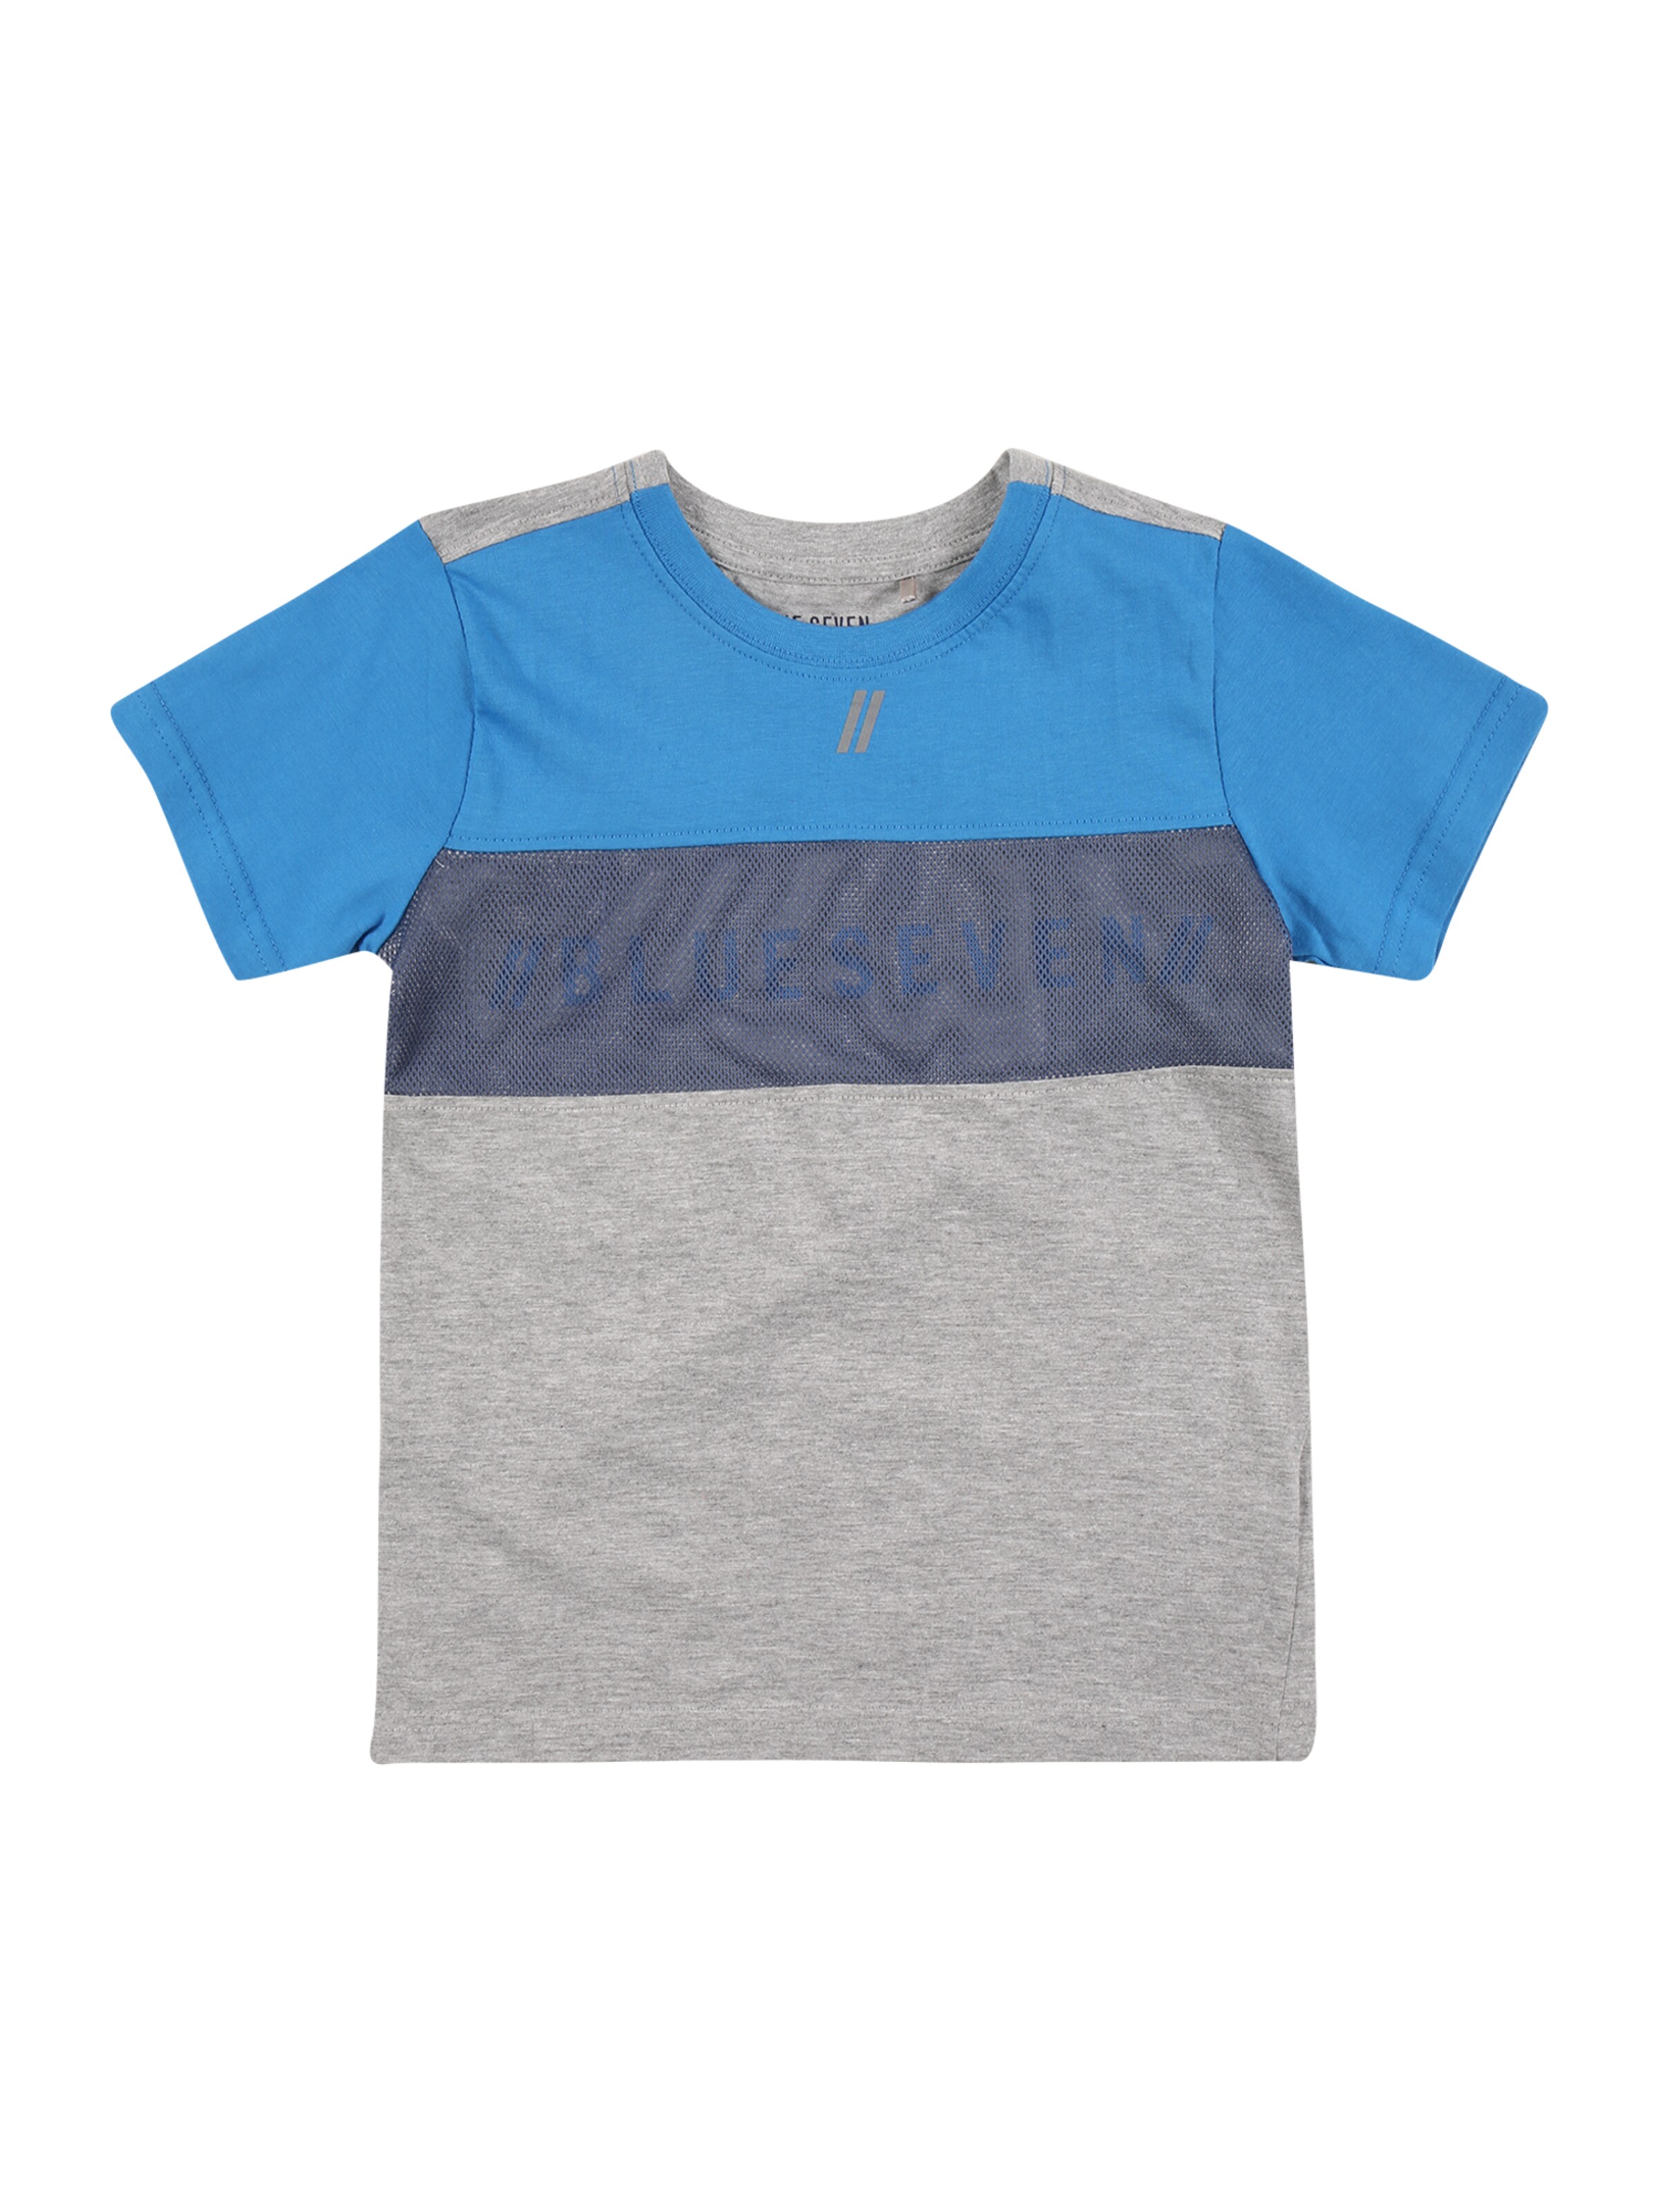 Kinder Kids (Gr. 92-140) BLUE SEVEN T-Shirt in Navy, Hellblau - PL29914